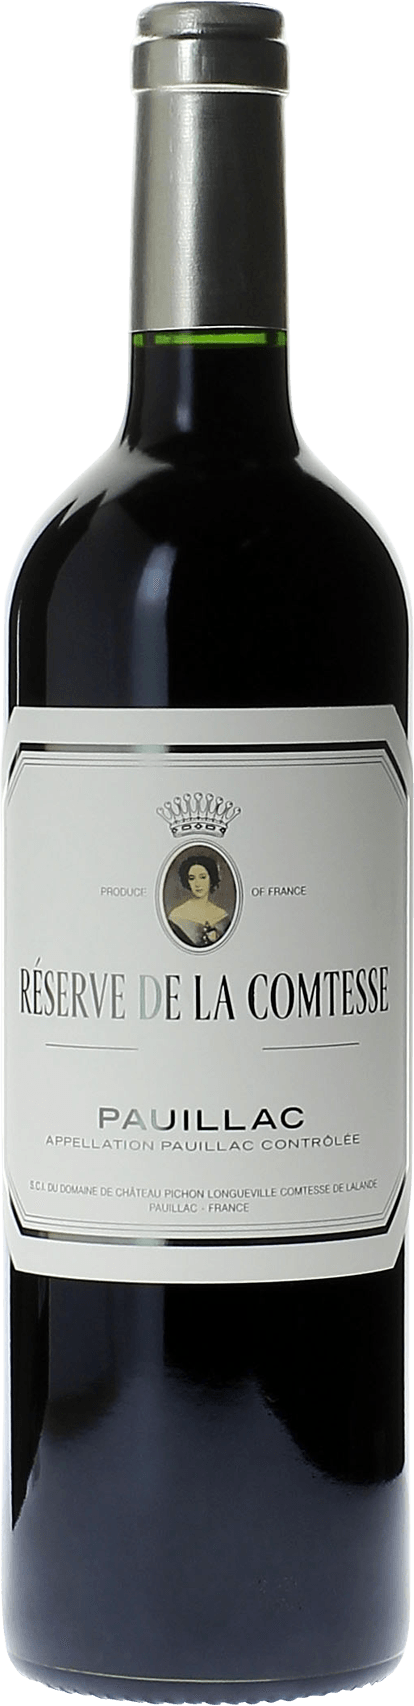 Reserve de la comtesse 2014 2nd Vin de Pichon Comtesse Pauillac, Bordeaux rouge